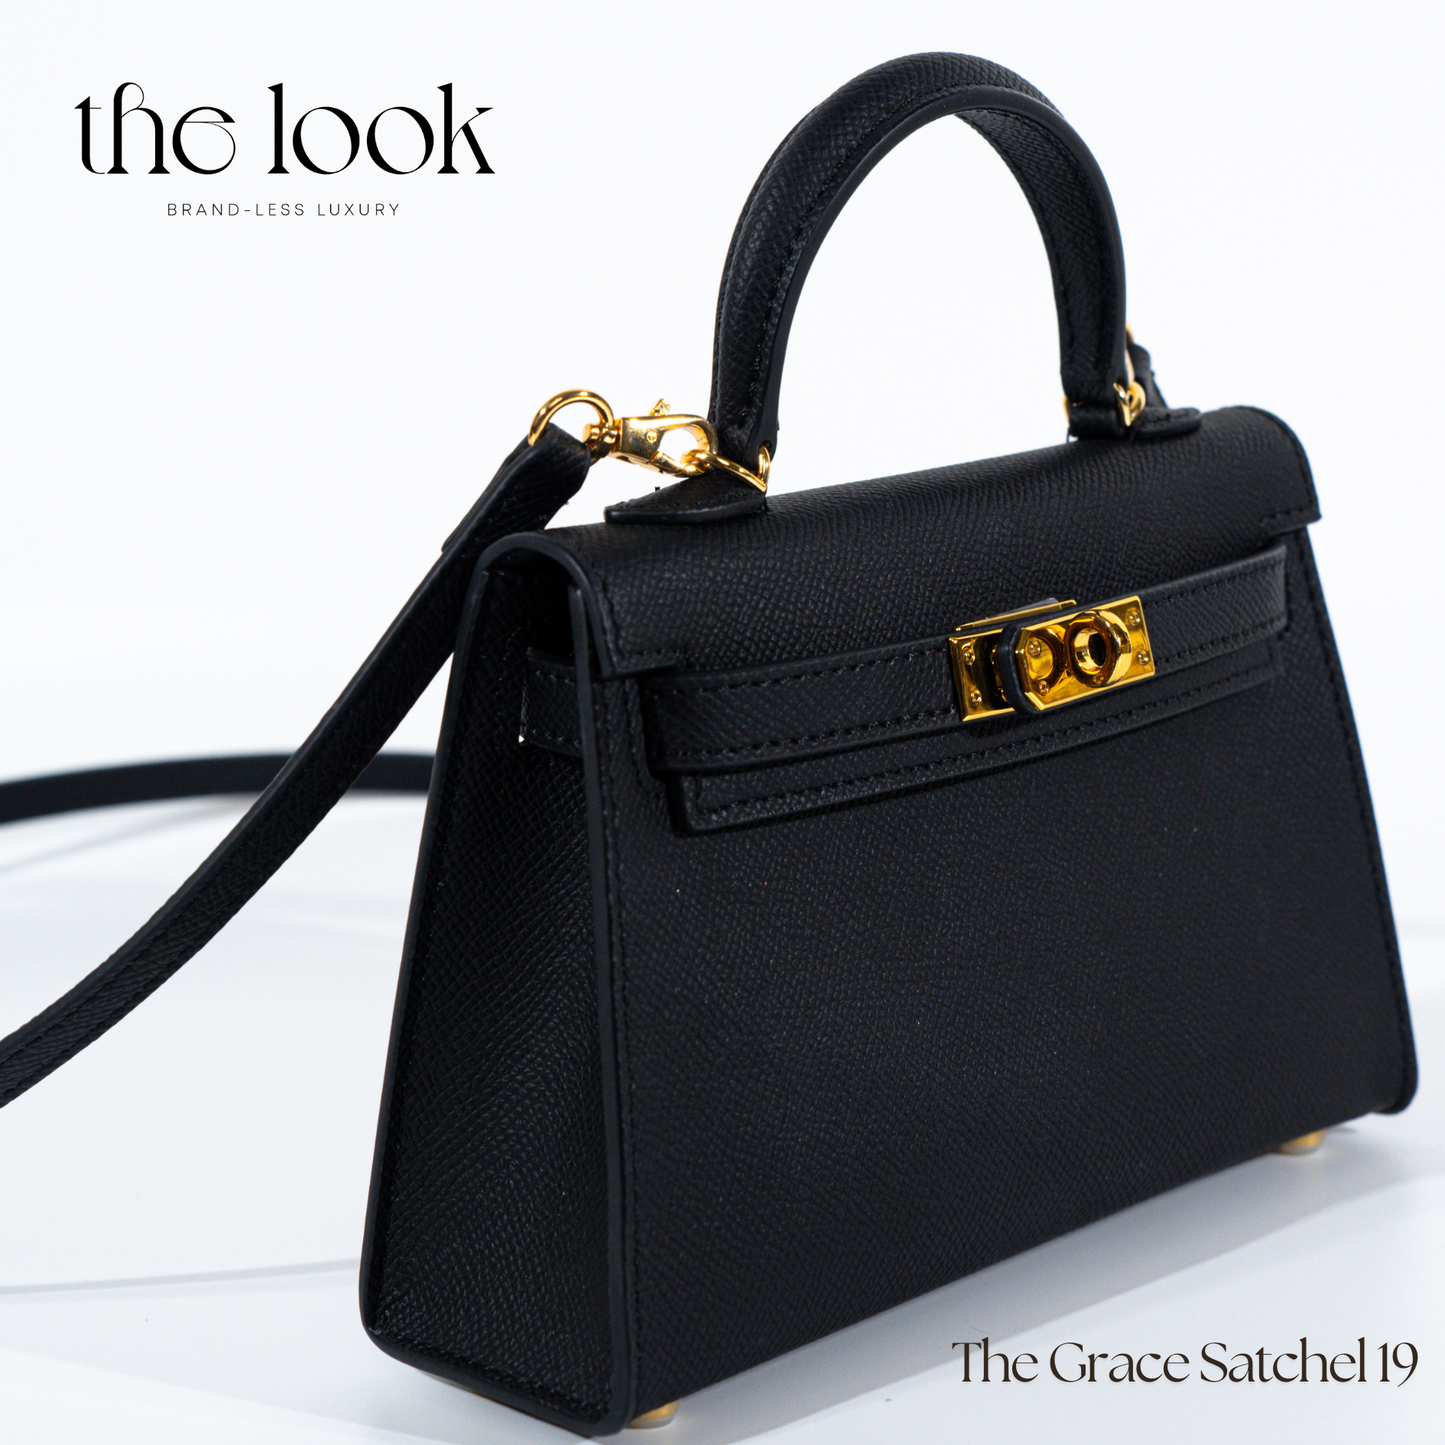 The Grace 19 Mini in Noir GHW by The Look